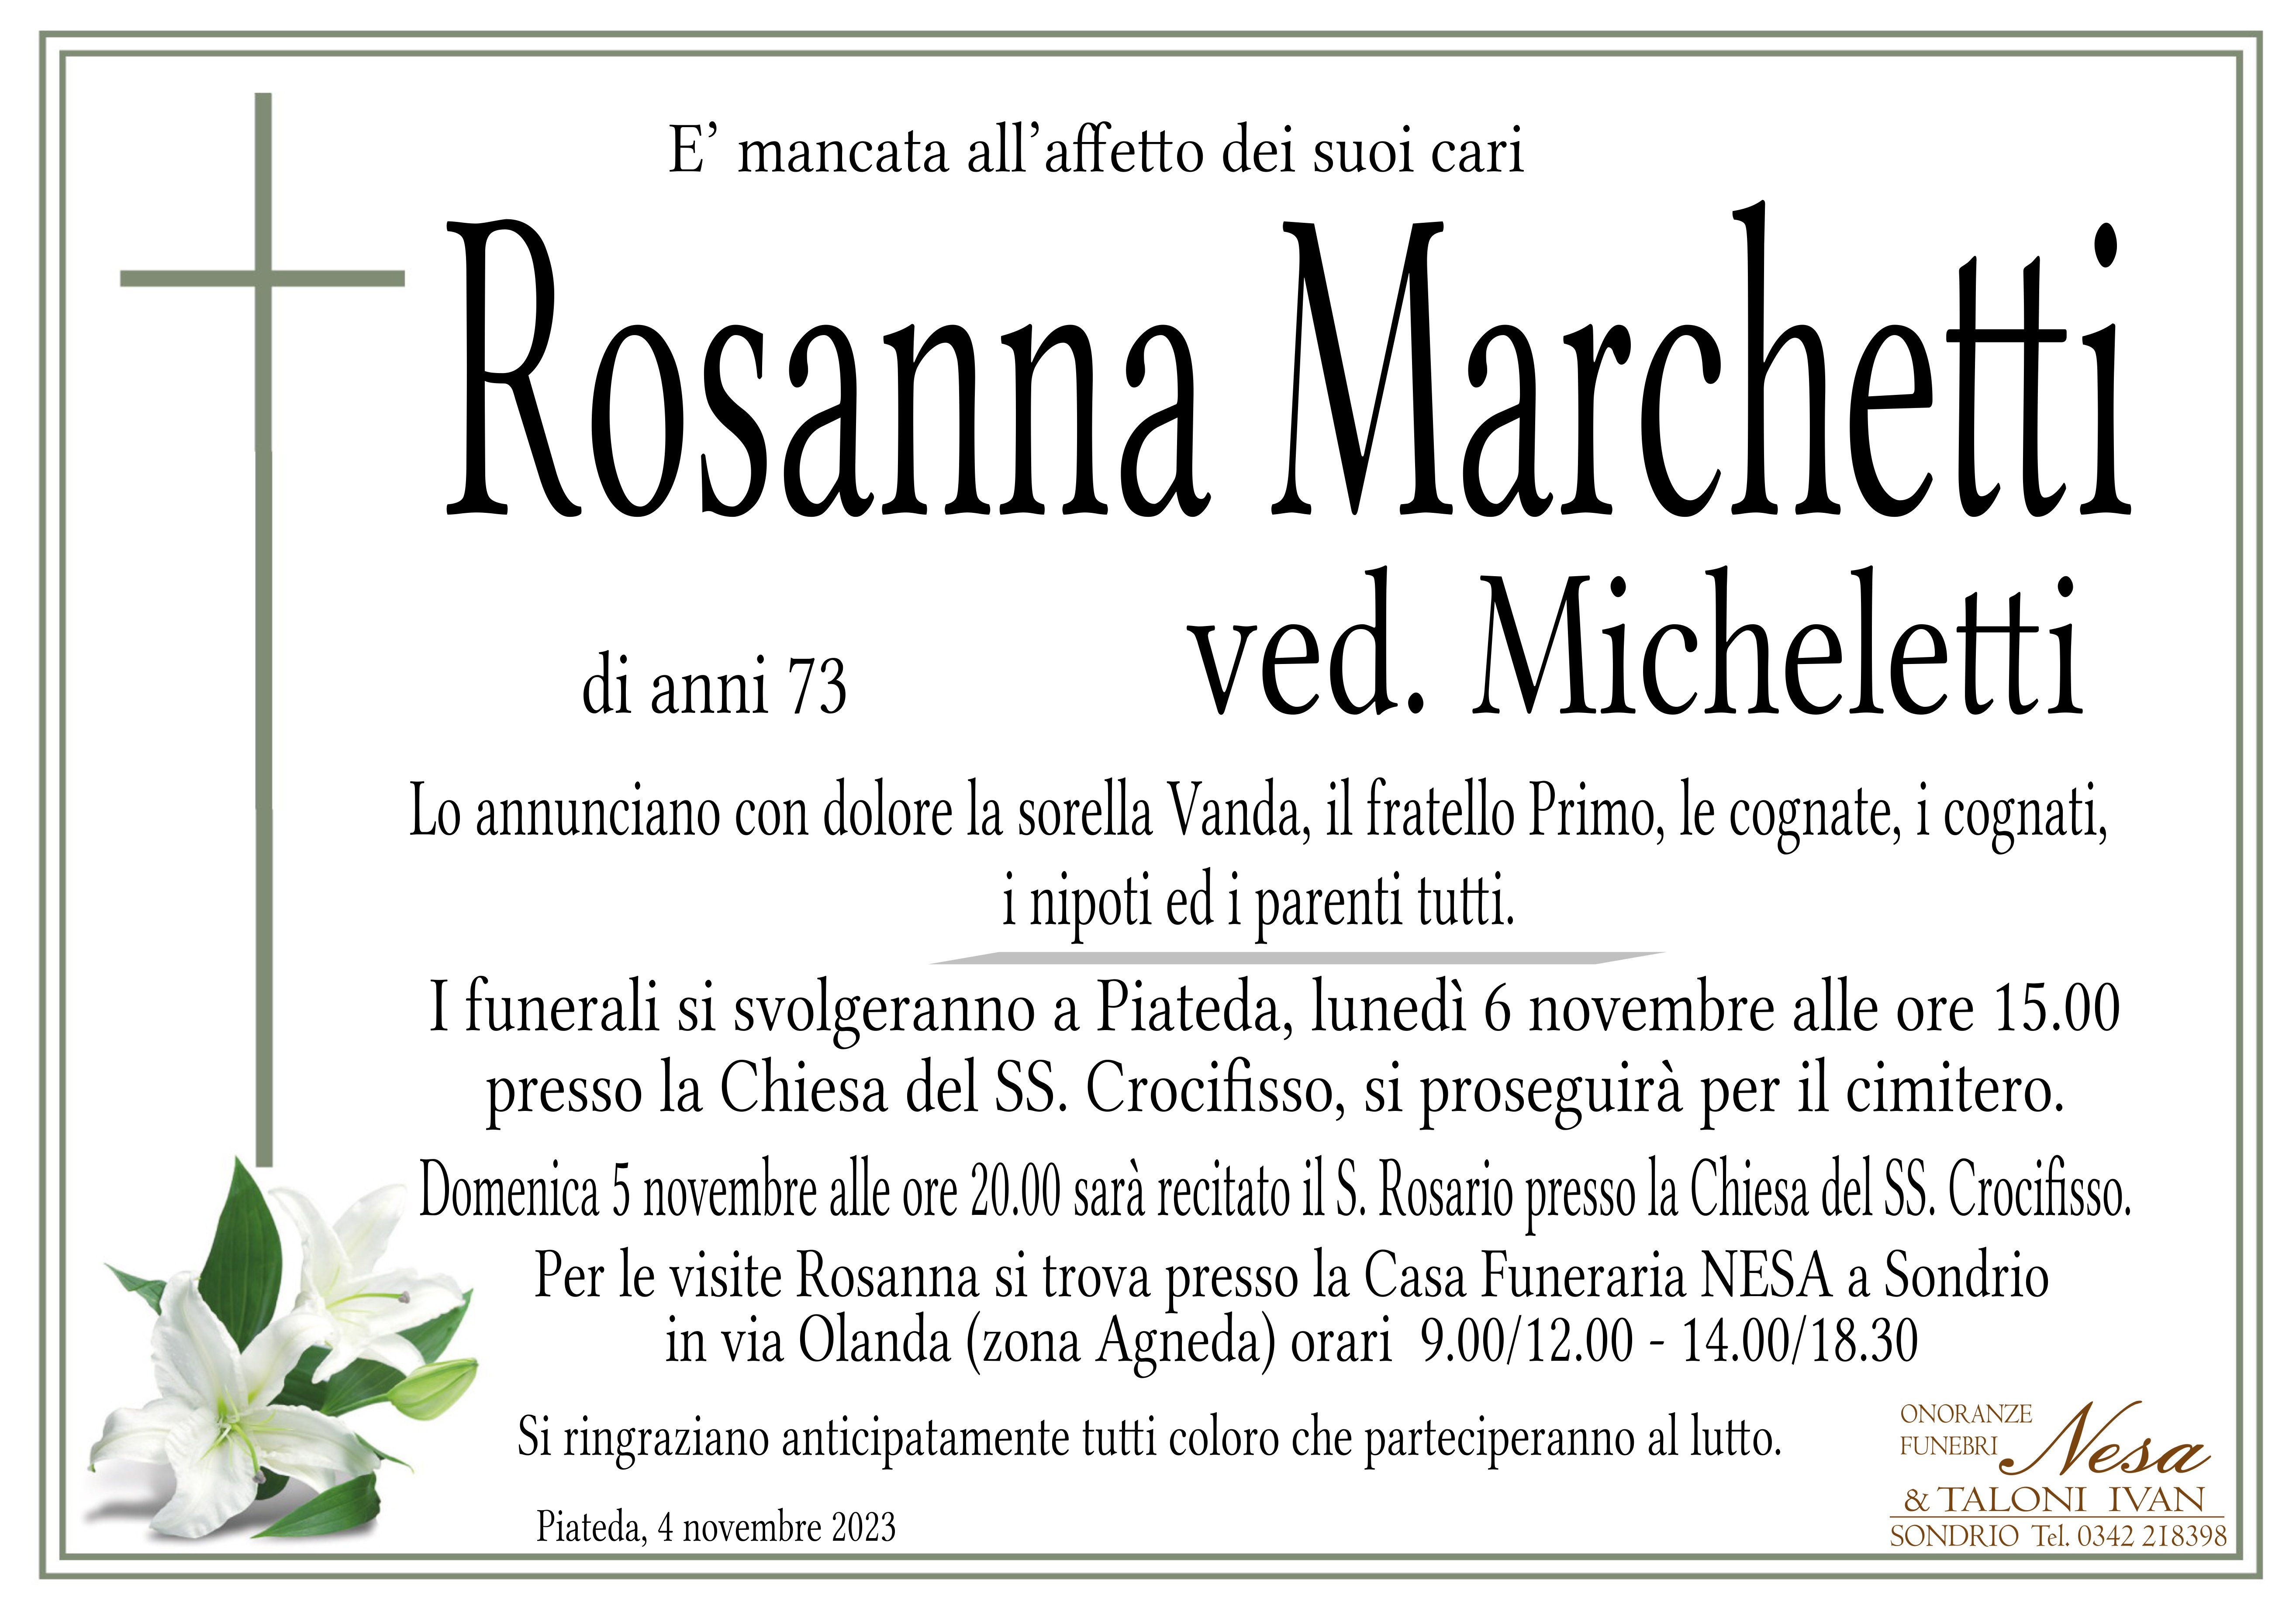 Necrologio Rosanna Marchetti ved. Micheletti